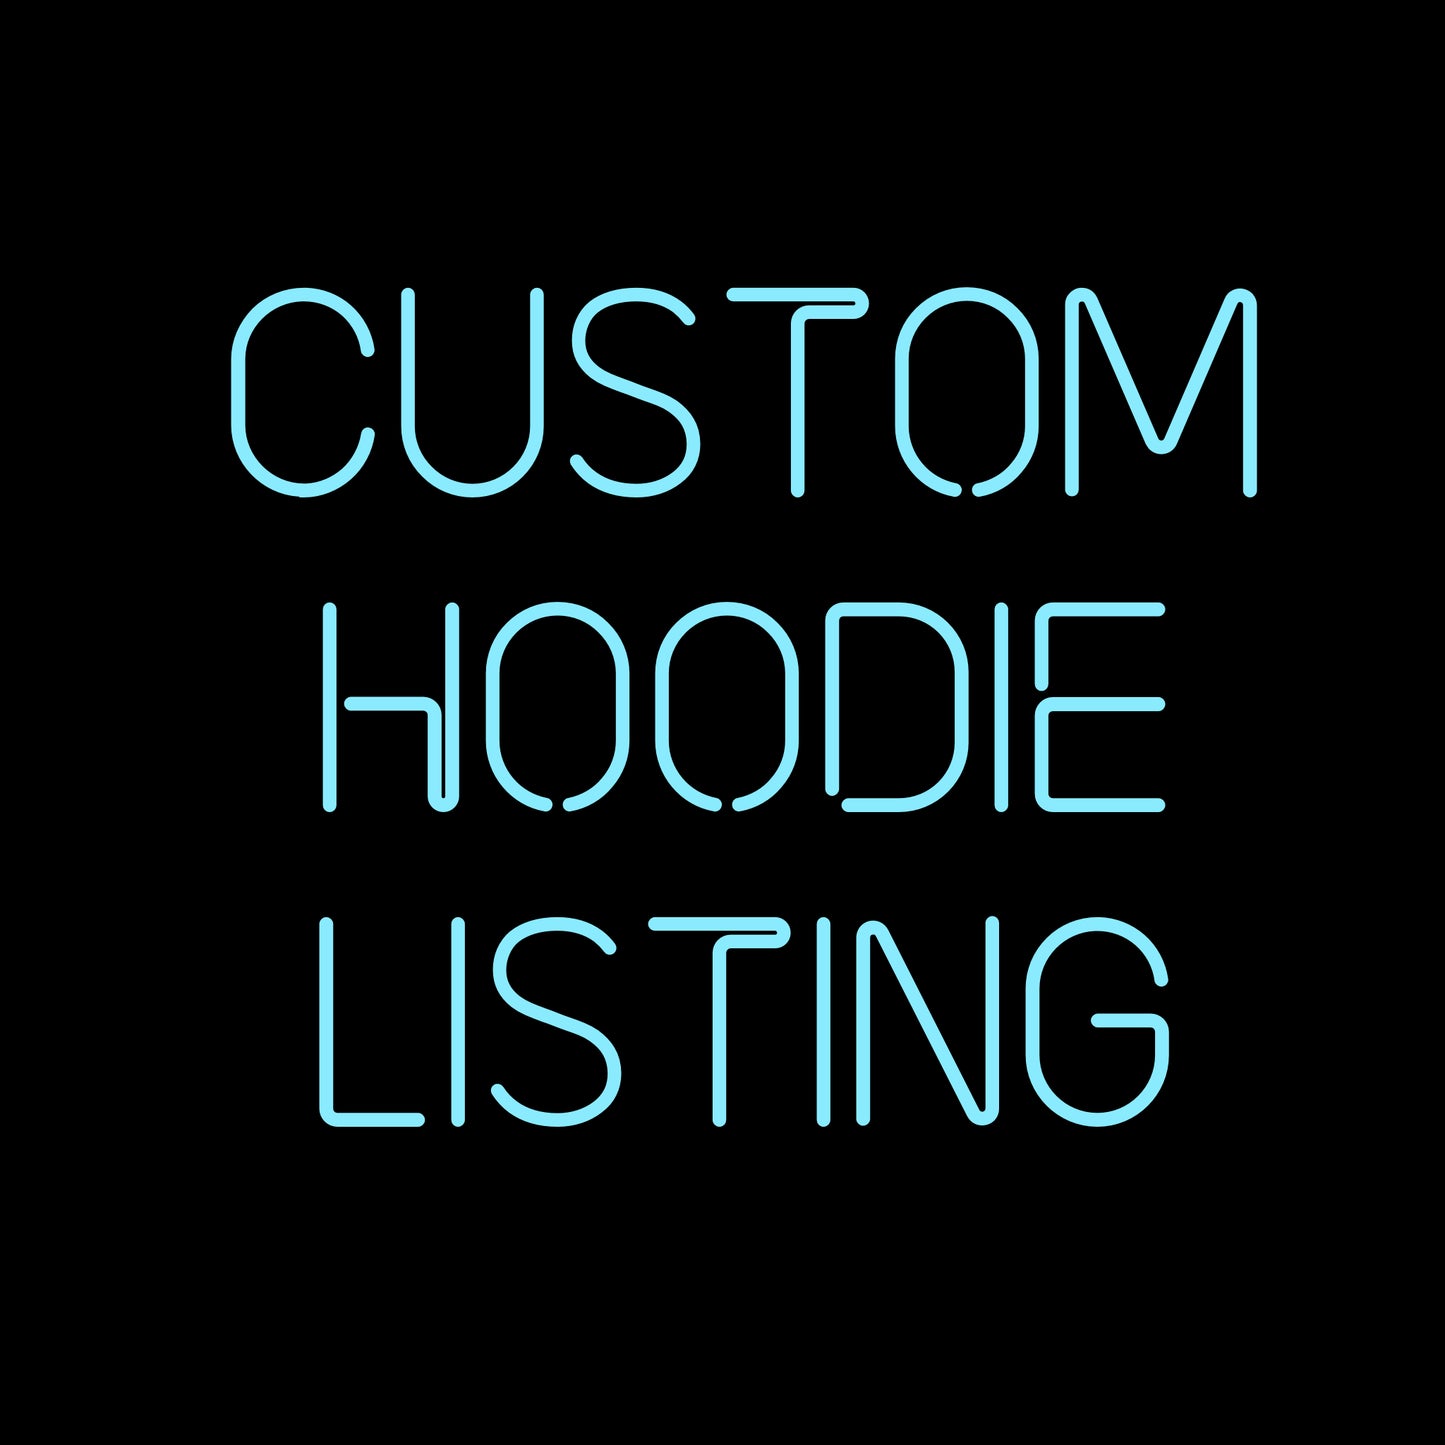 Custom hoodie listing